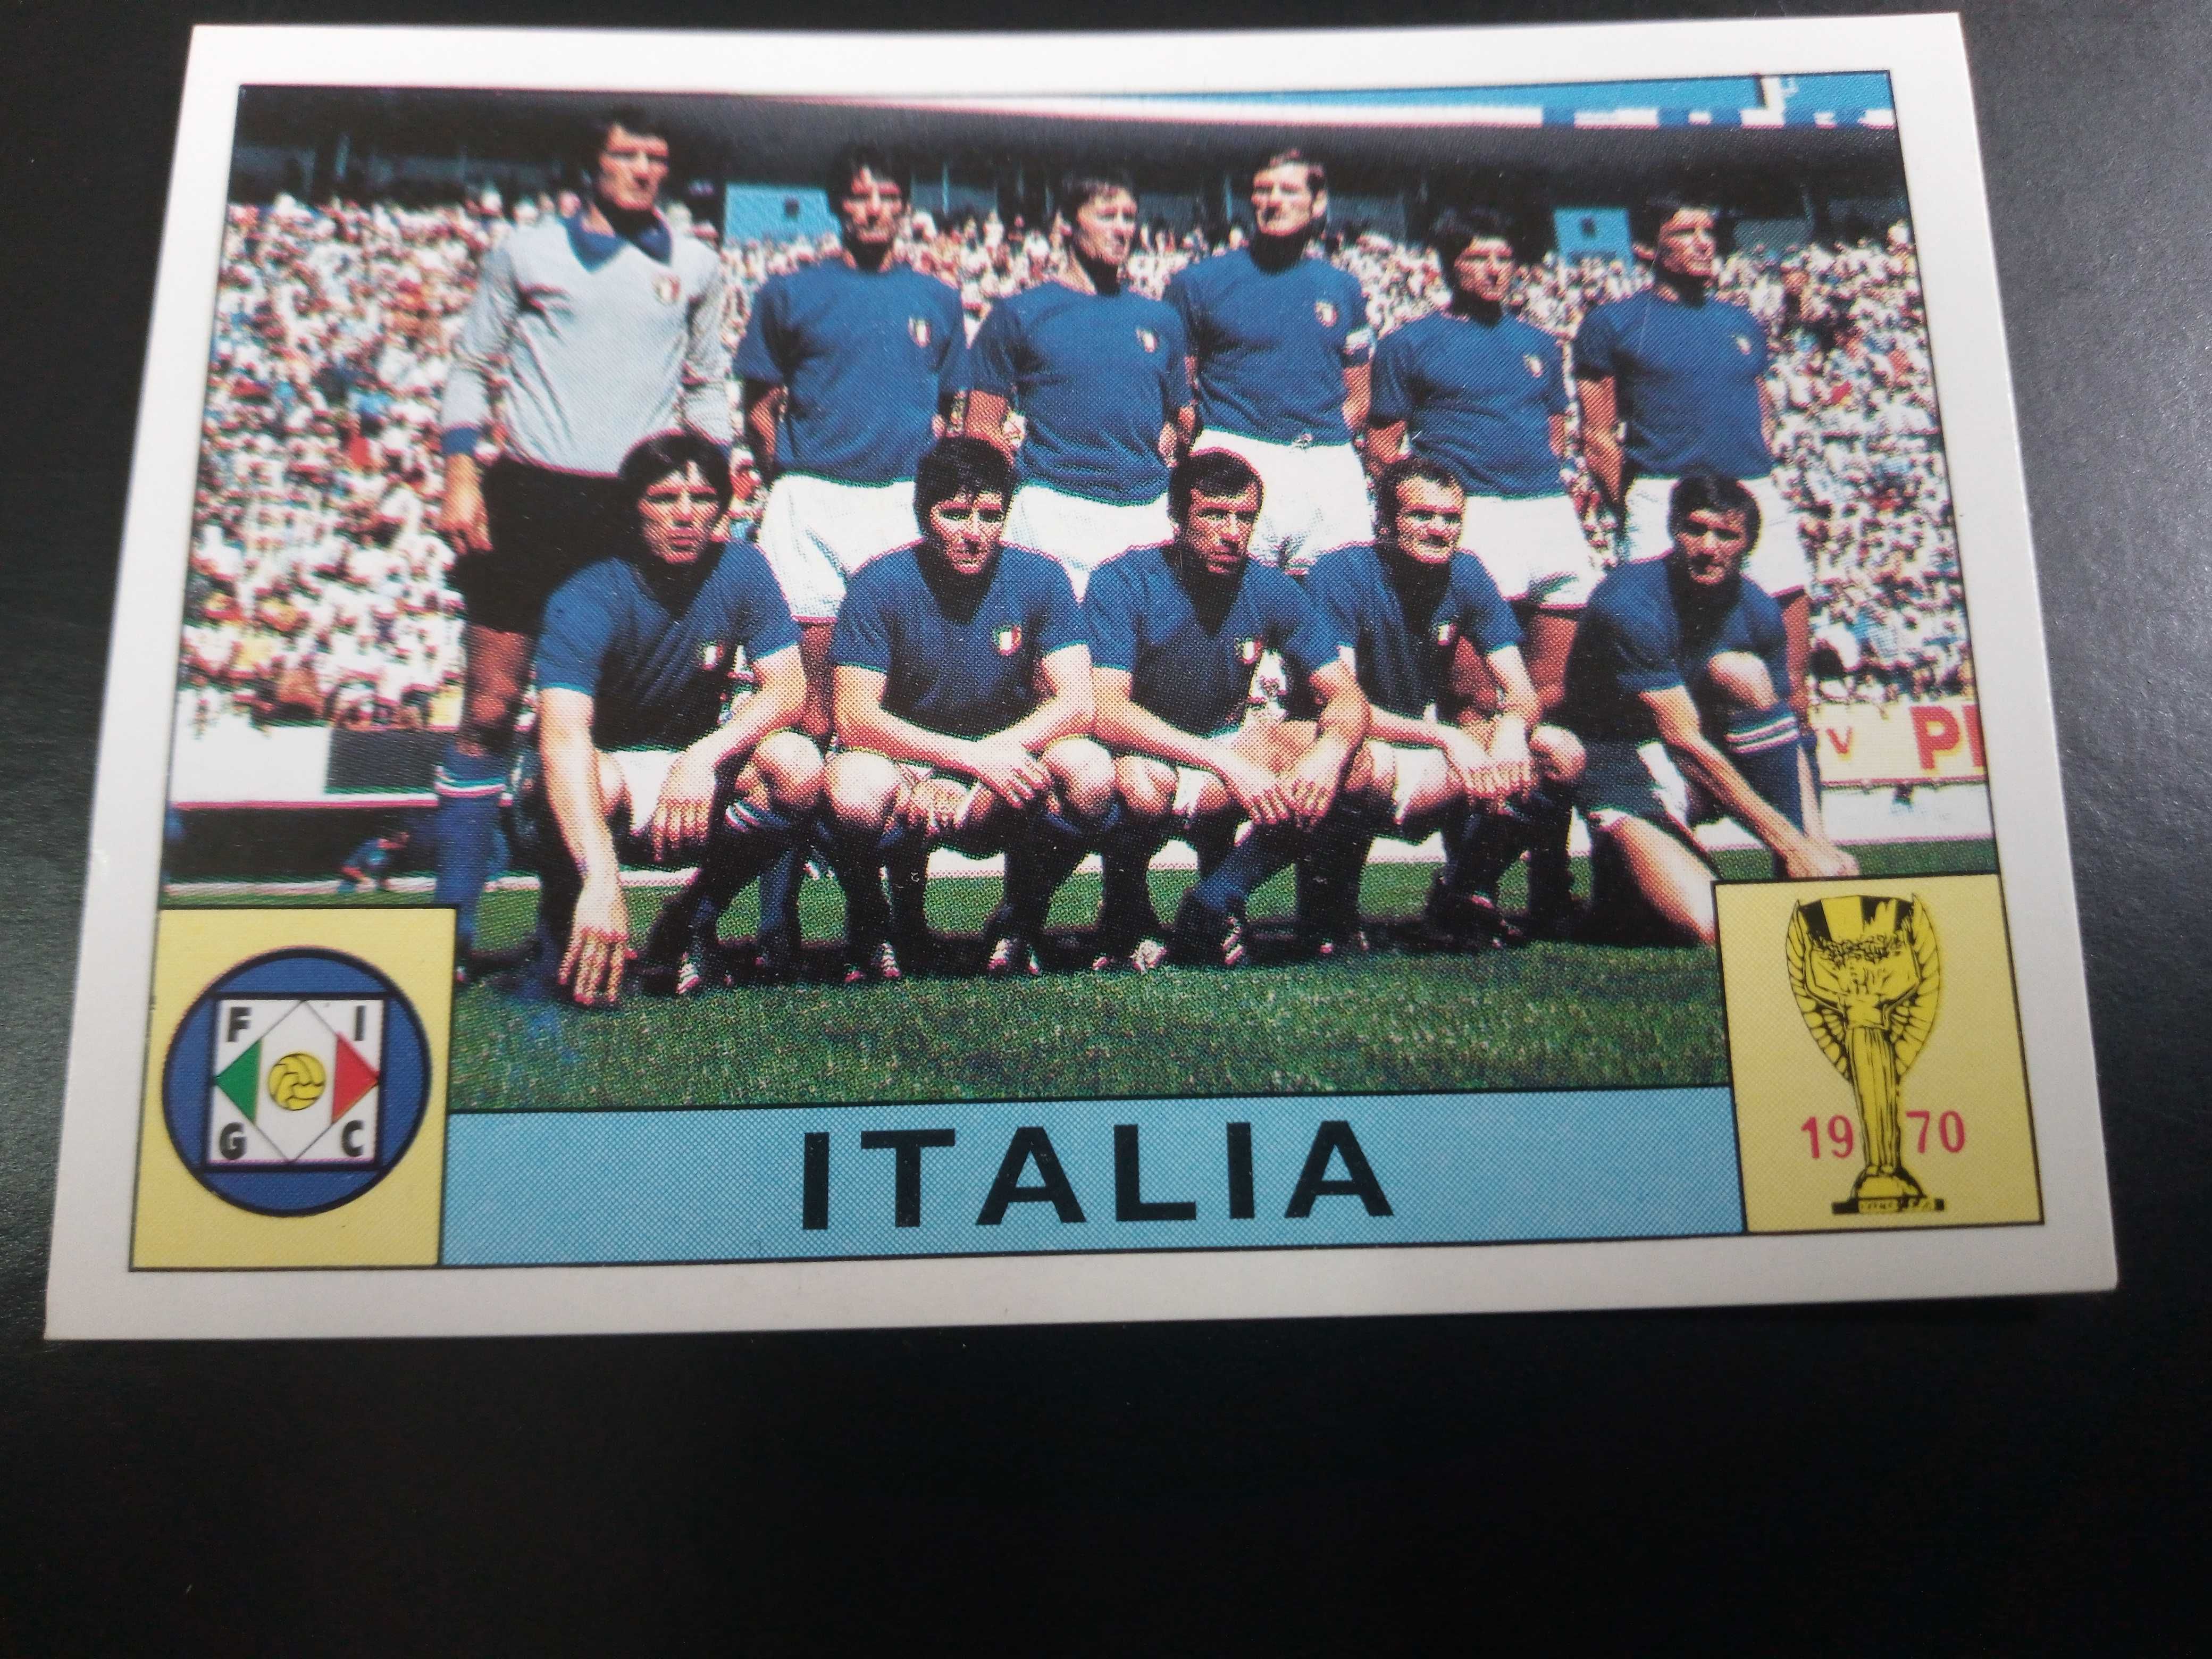 Cromo Panini World Cup Story da Seleção de Itália no Mundial de 70